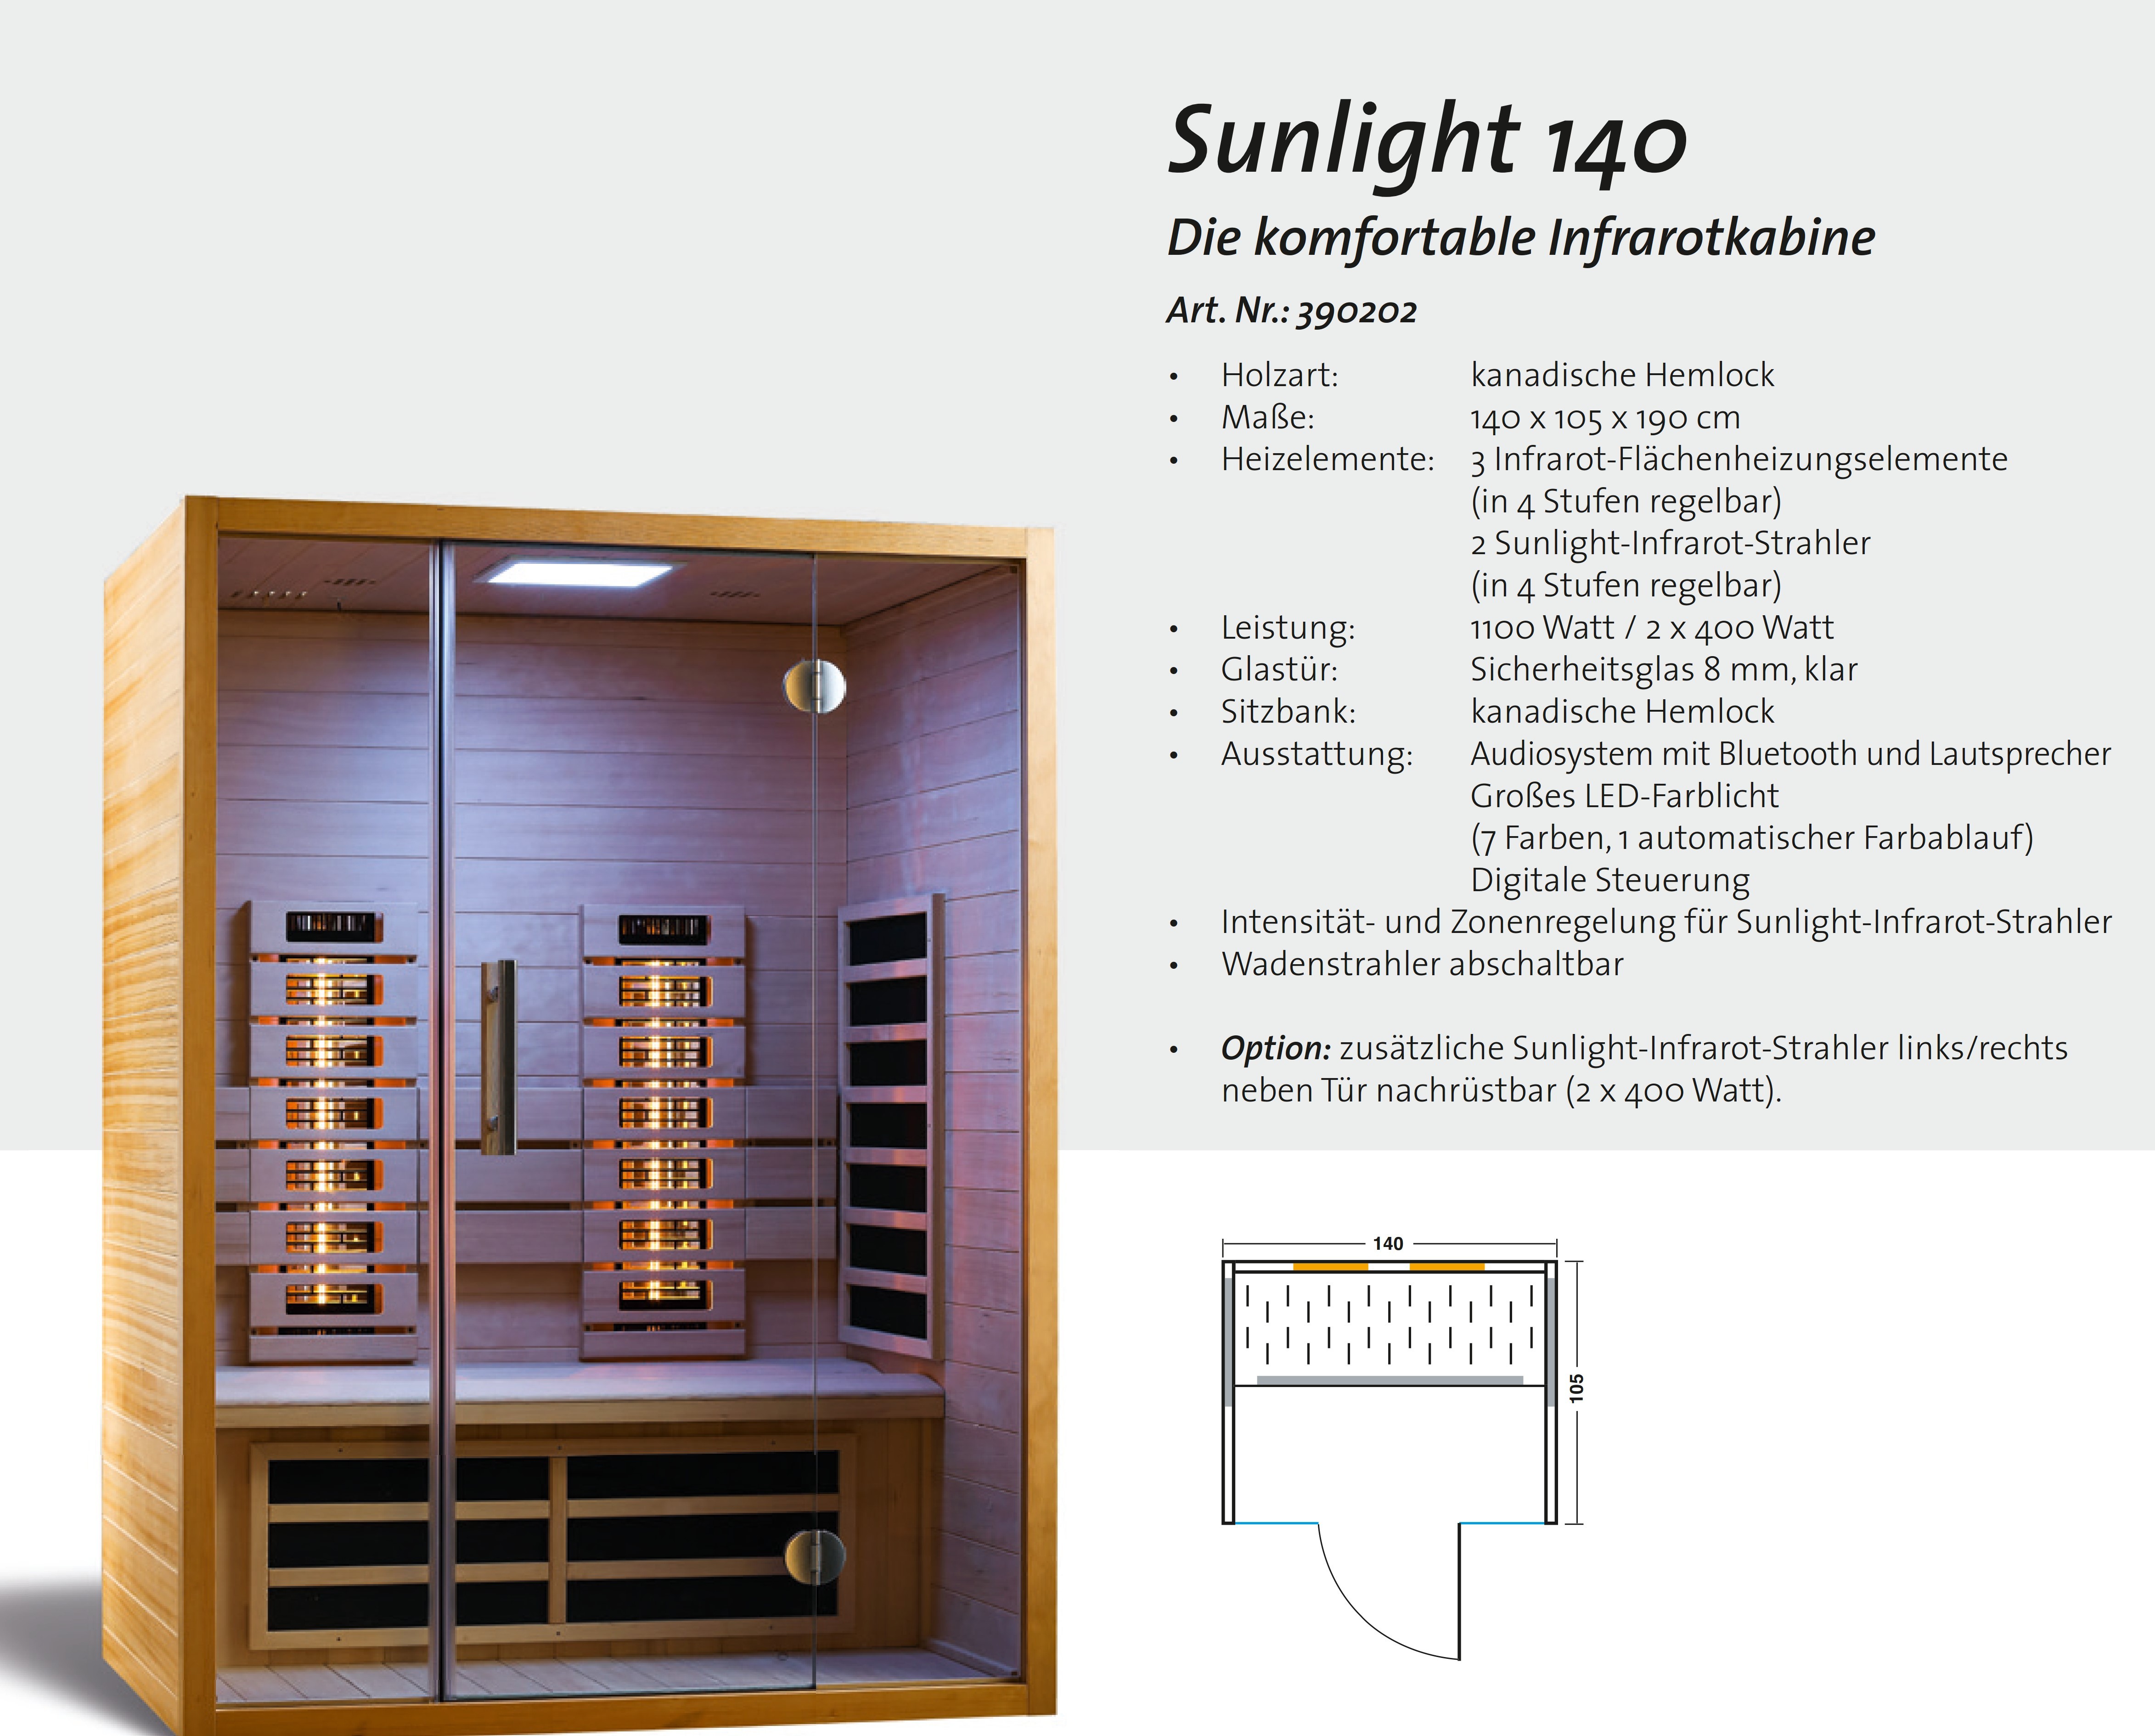 Sunlight140-Infrarot